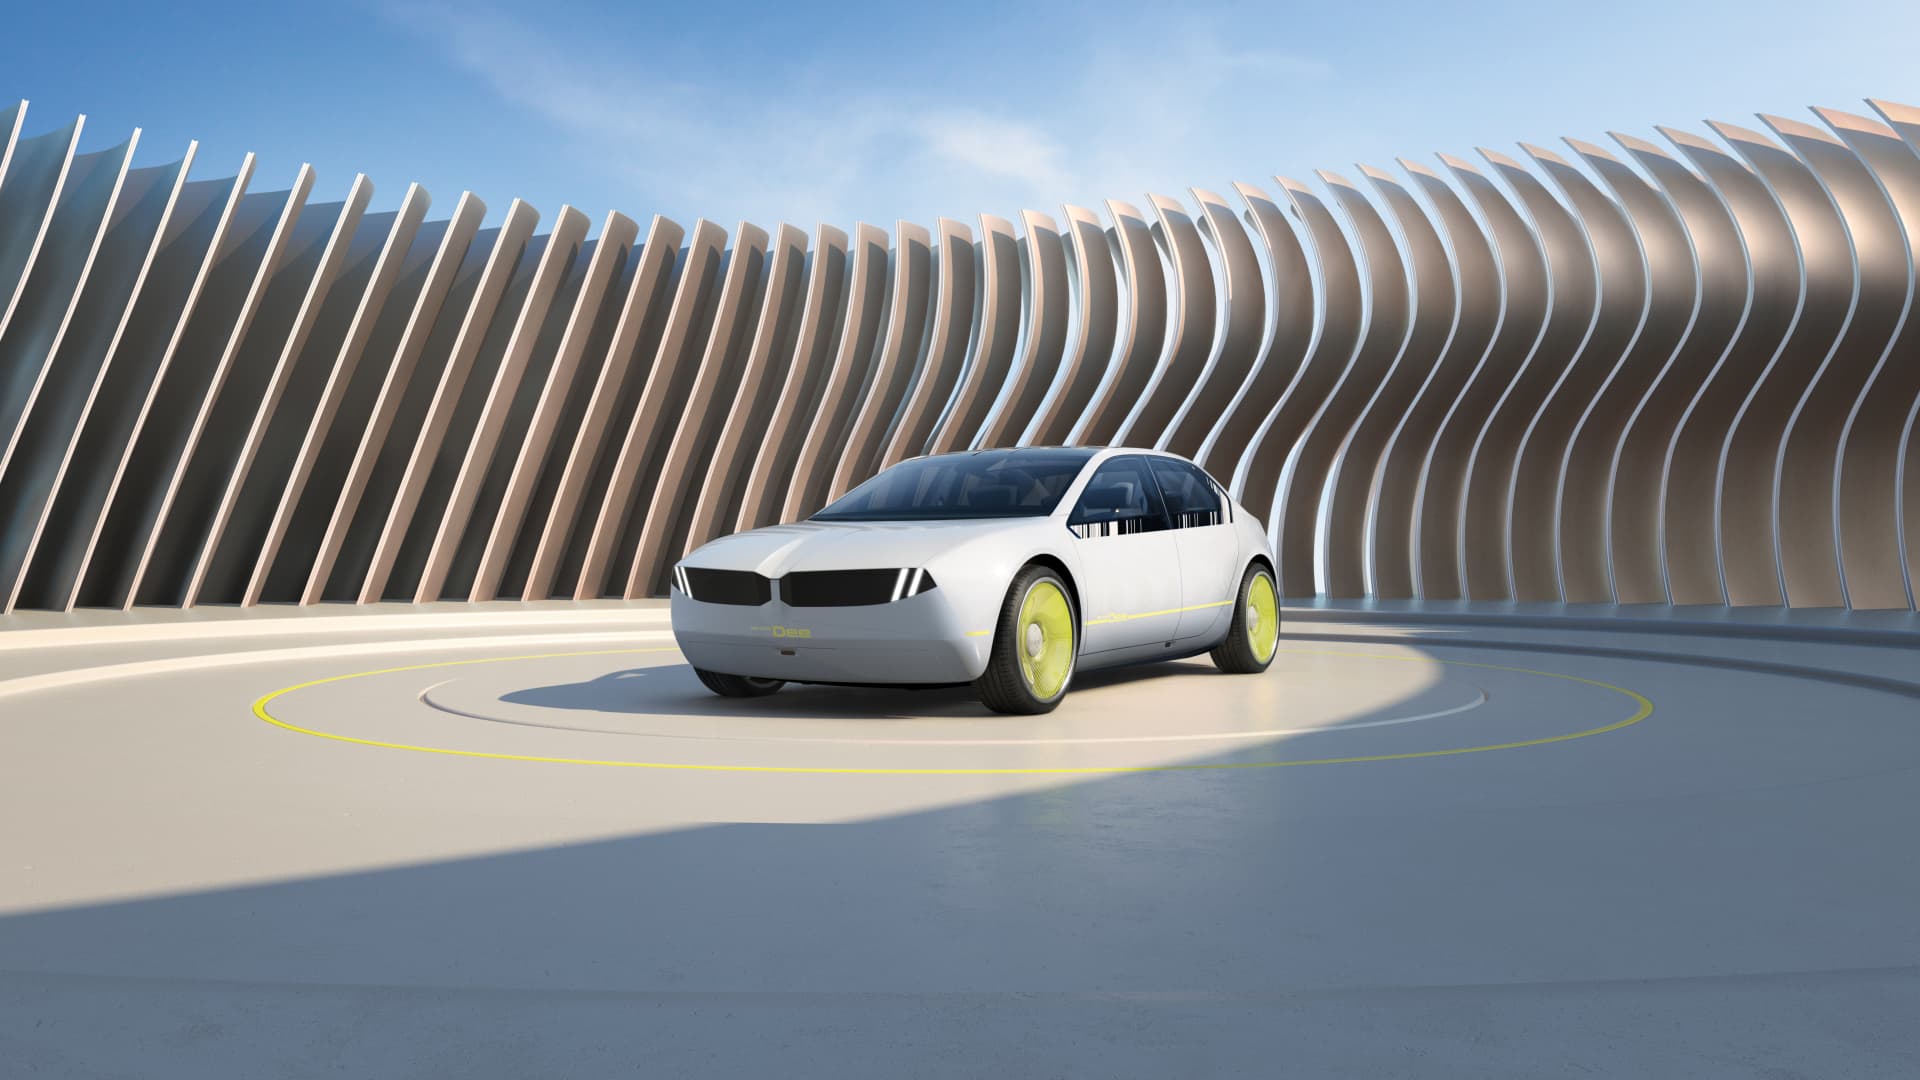 Dai un’occhiata alla nuova concept car BMW che cambia colore, la i Vision Dee